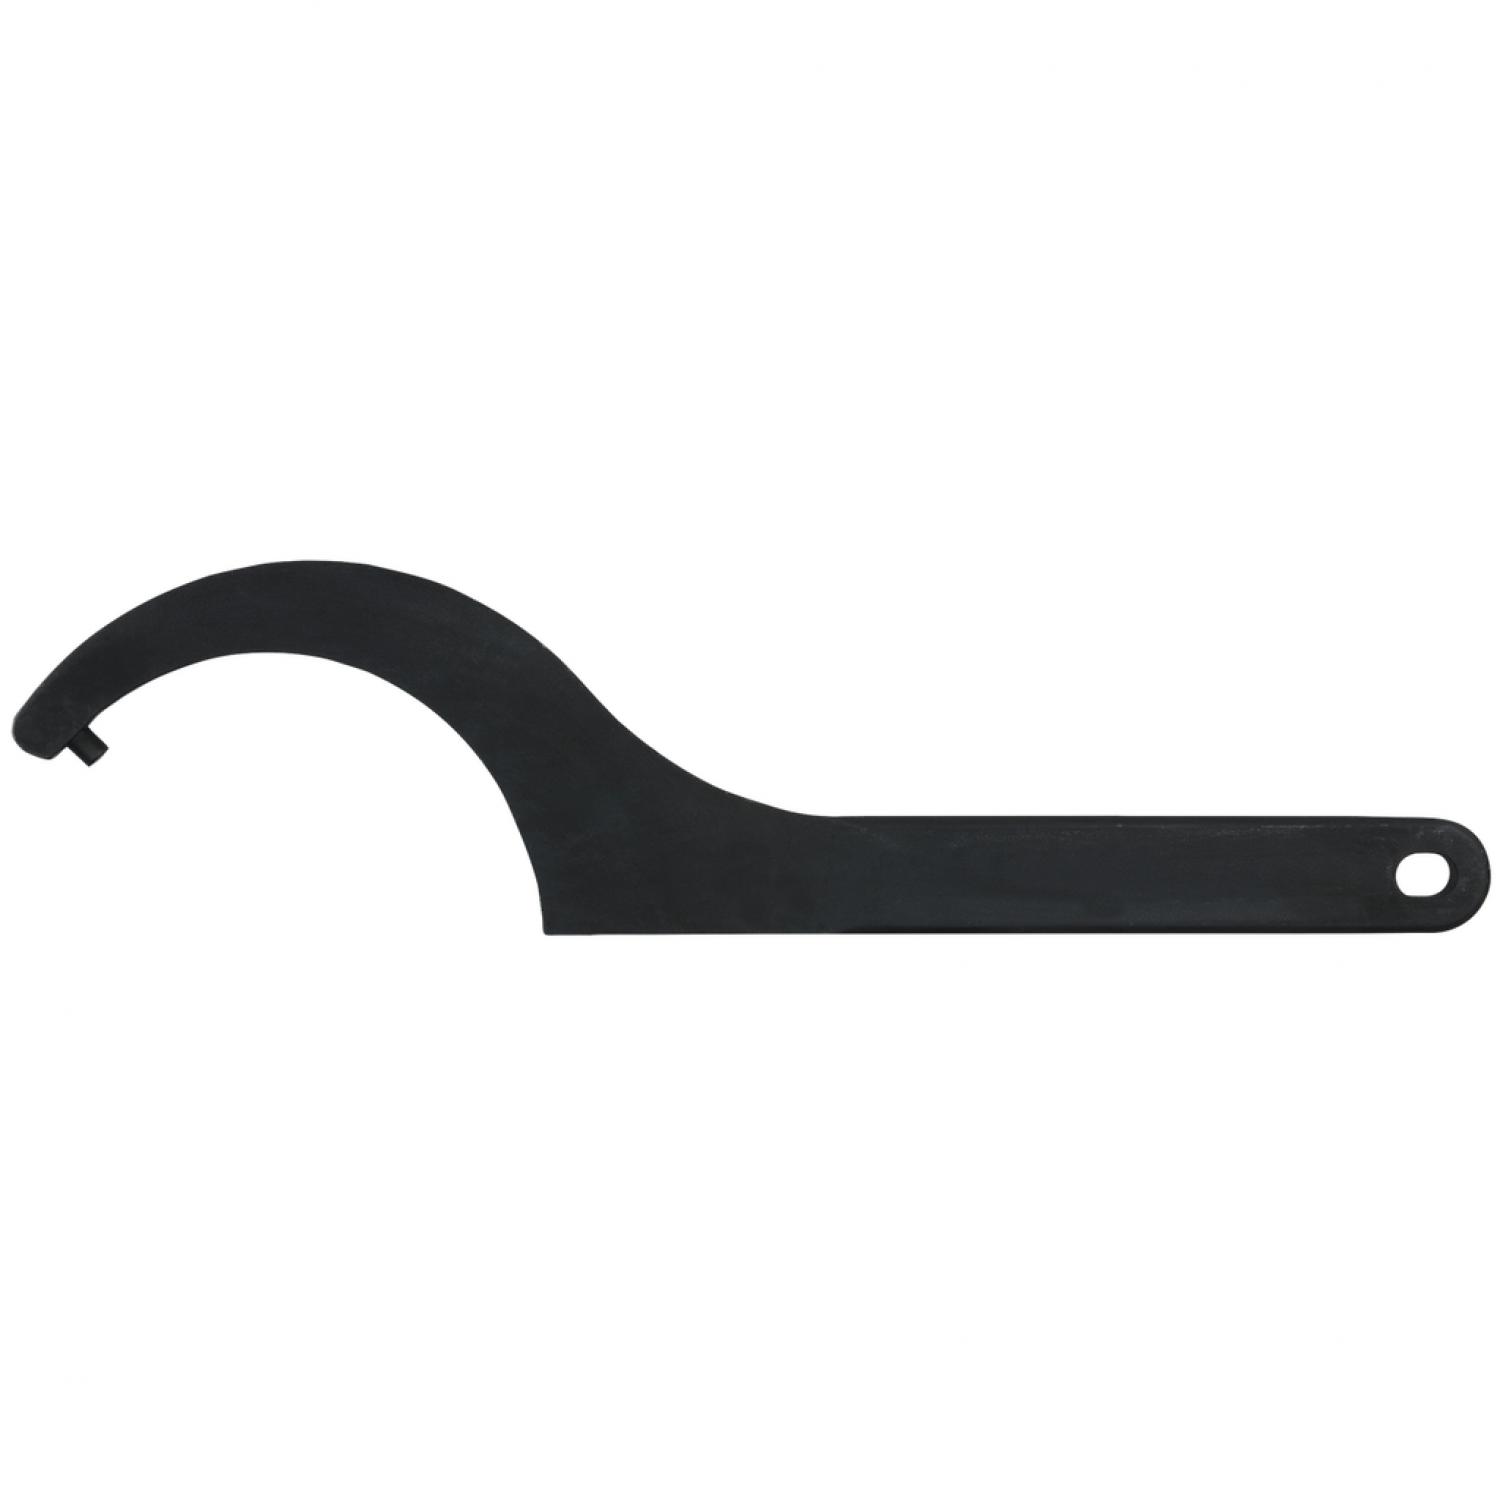 Прочный крючковый ключ с цапфами, 110-115 мм